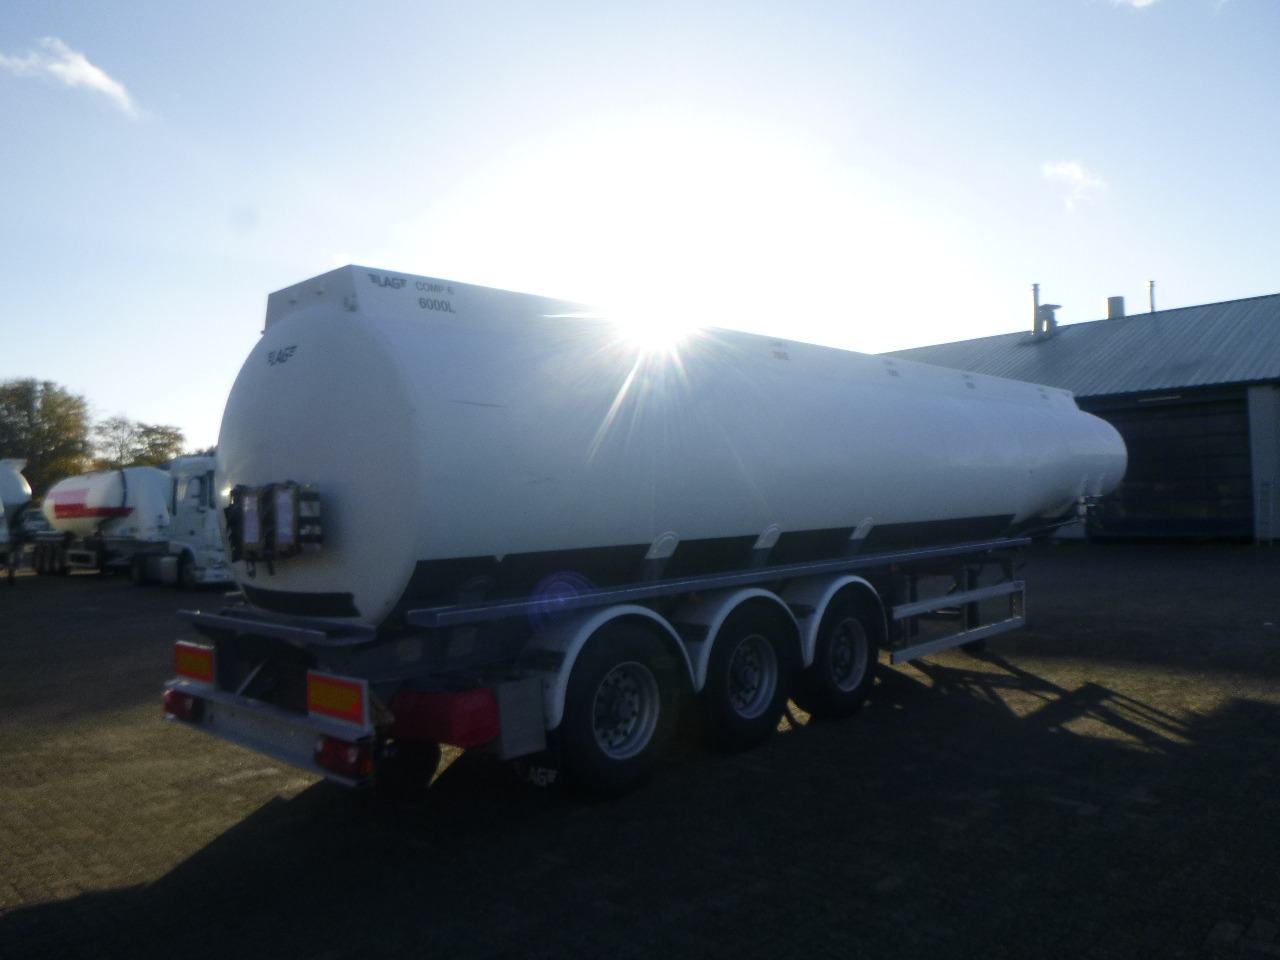 Cisterna semirremolque para transporte de combustible L.A.G. Fuel tank alu 44.4 m3 / 6 comp + pump: foto 4